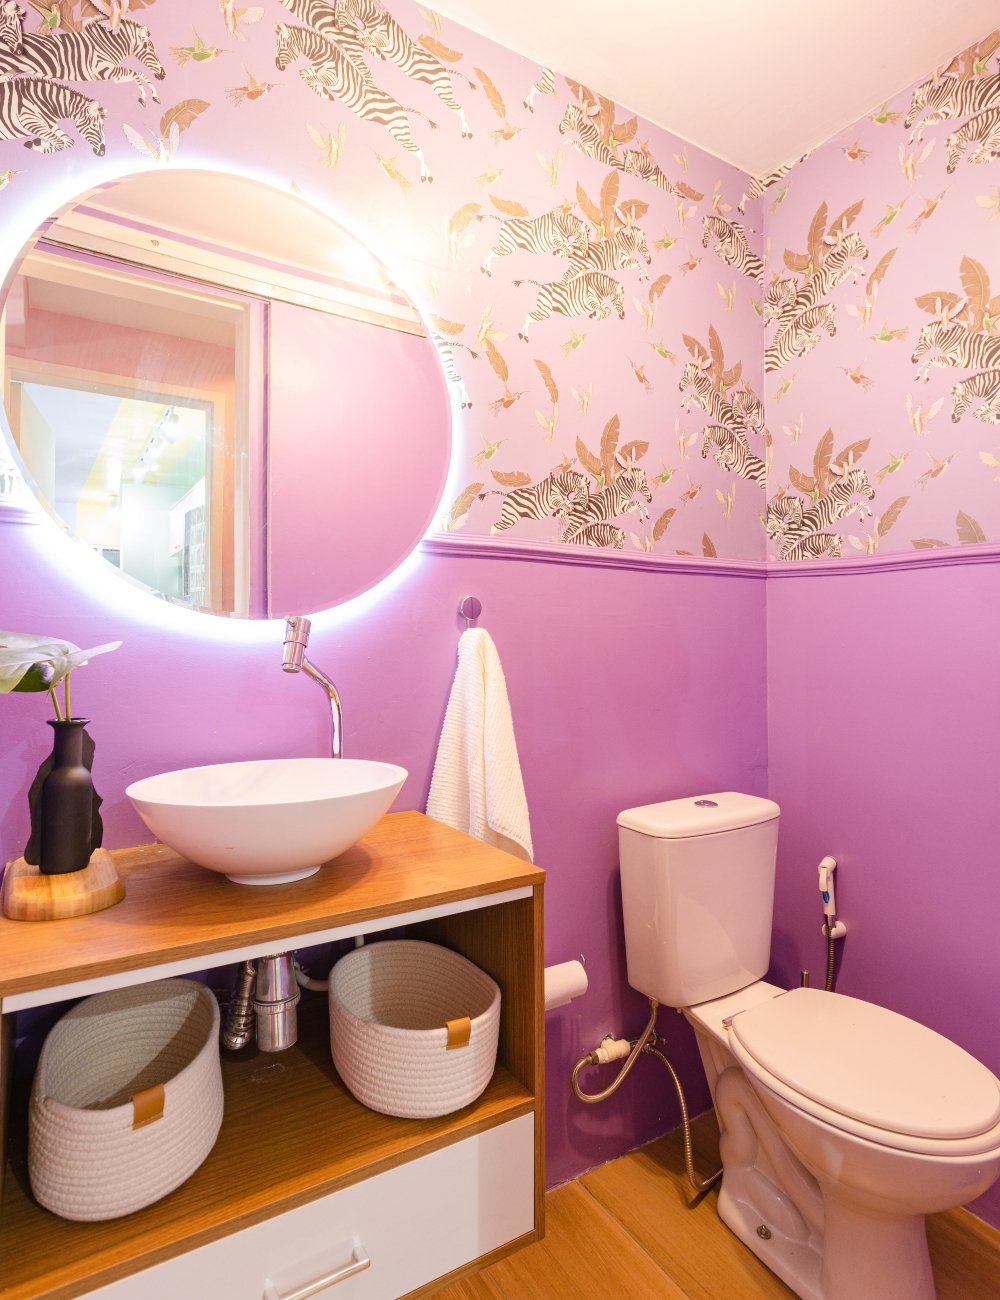 Banheiro - casa - casa colorida - decoração - Steal The Home - https://stealthelook.com.br